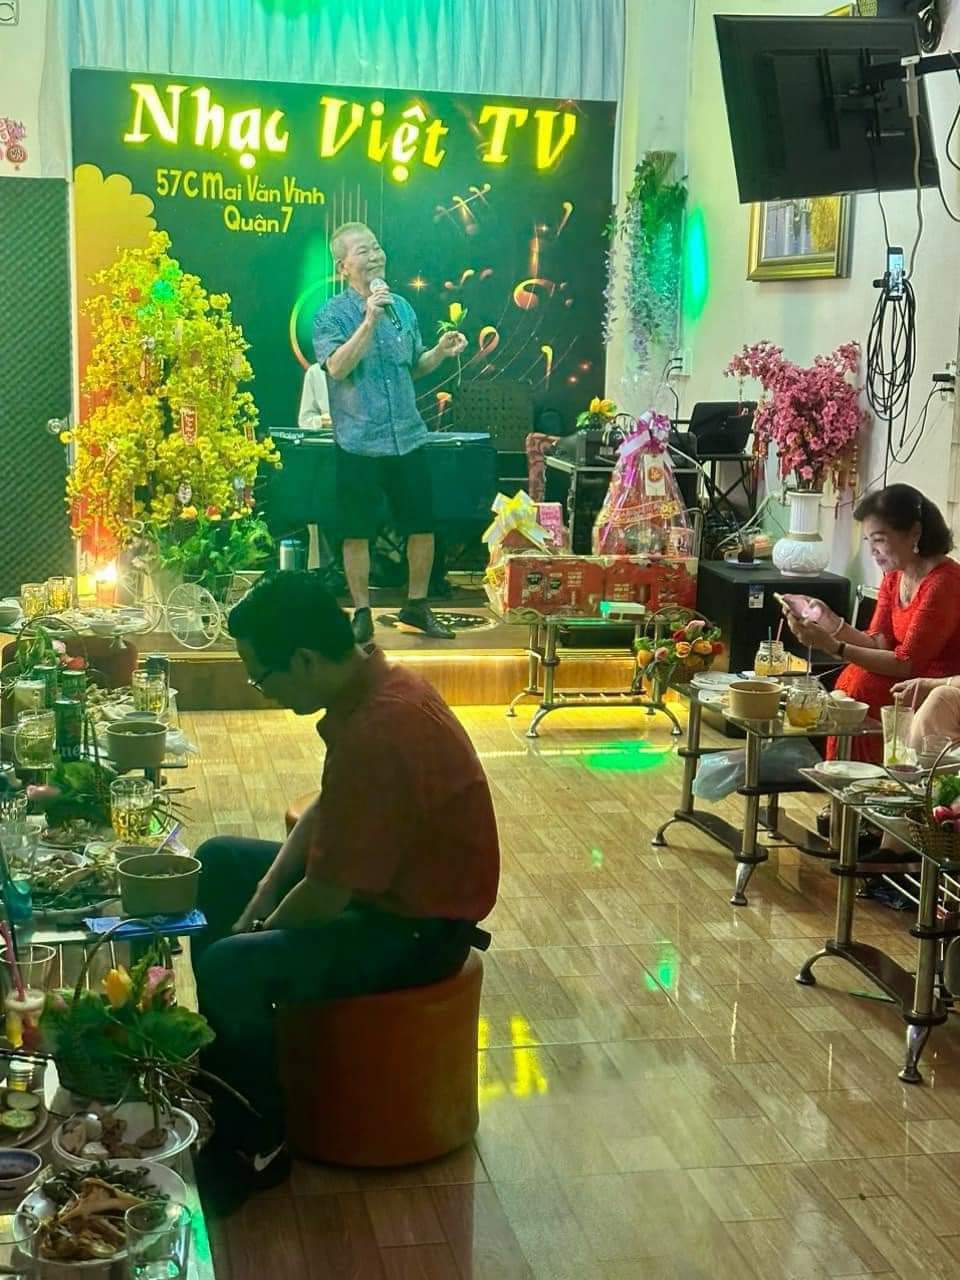 Sang quán Cà phê hát với nhau – Cà Phê Nhạc Việt TV đường Mai Văn Vĩnh Quận 7. Tel : 0939134907  – - Ảnh 2